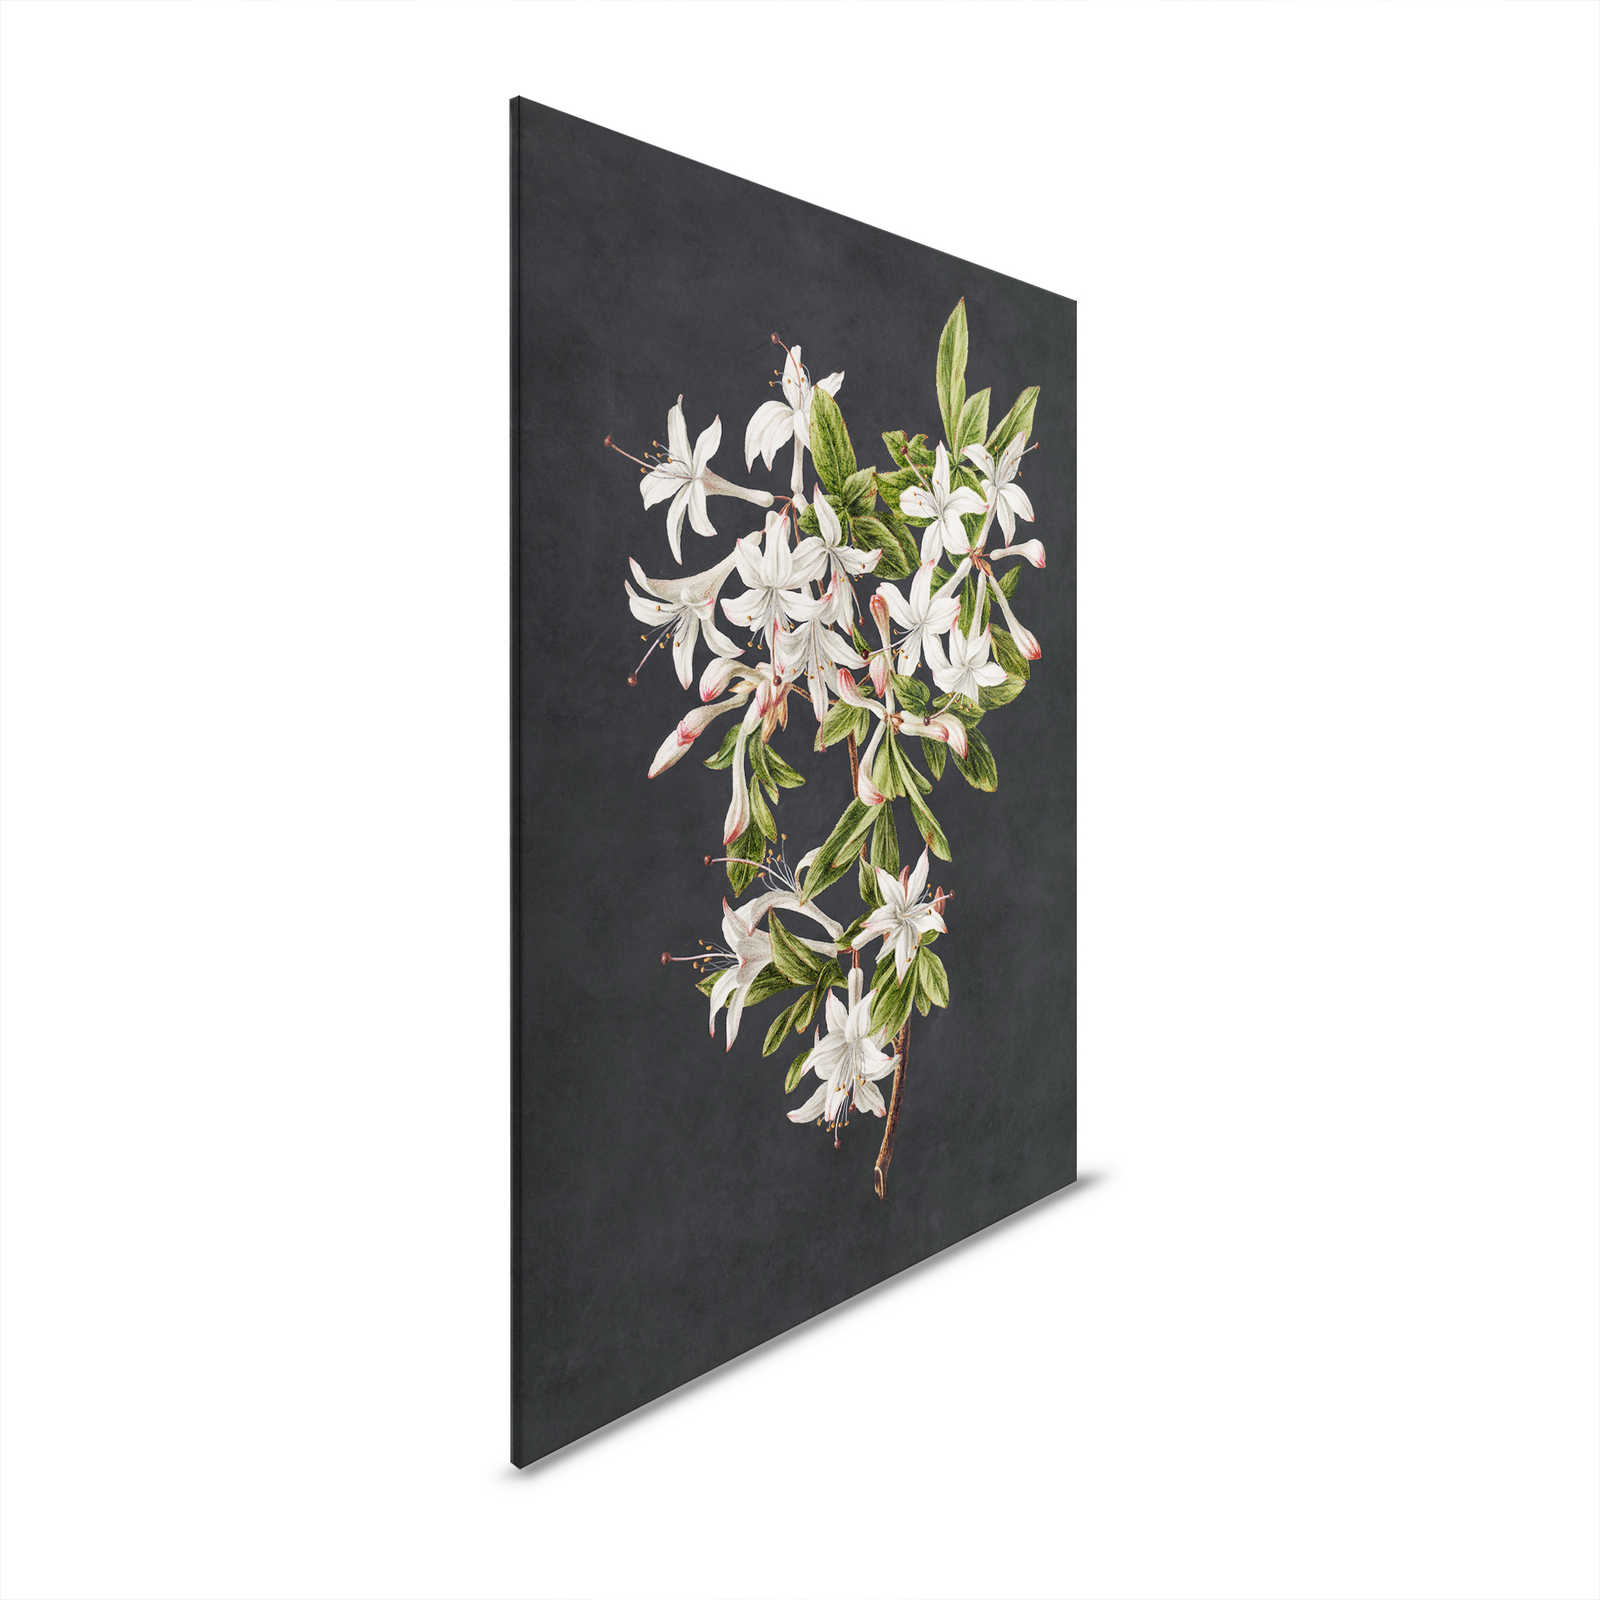 Midnight Garden 2 - Black Canvas Painting Flower Branch White Flowers - 0.80 m x 1.20 m
